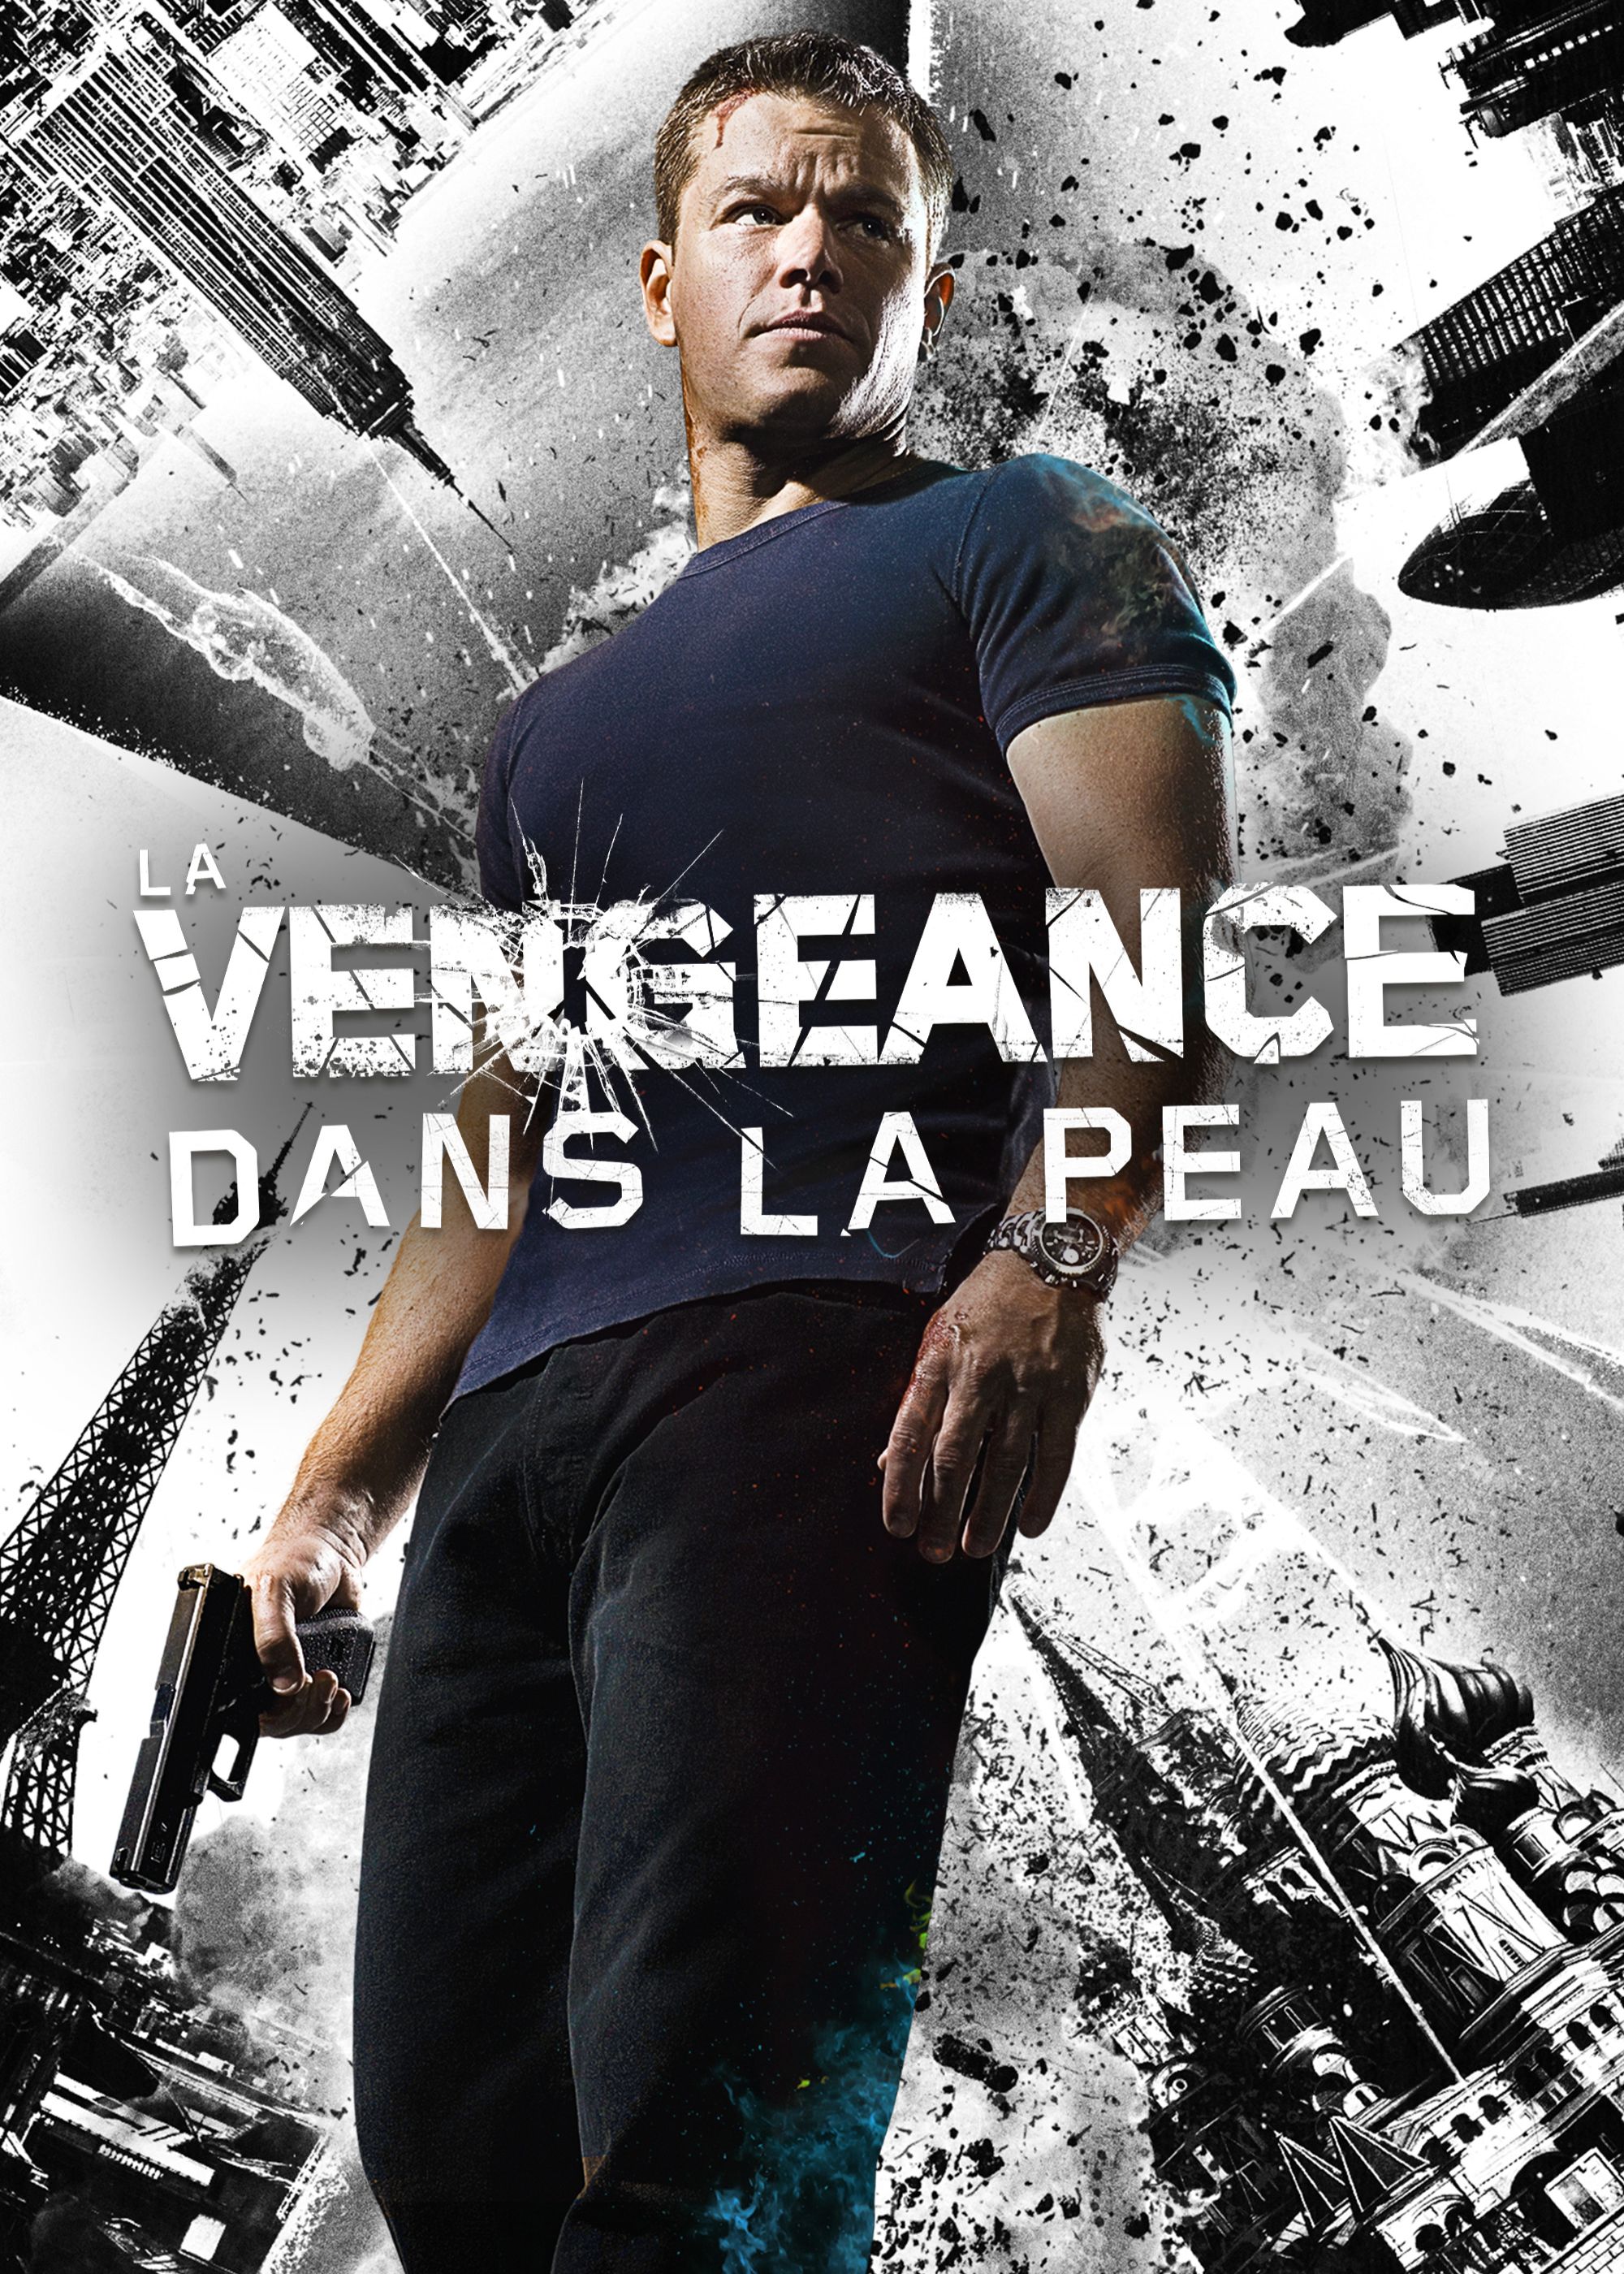 LA VENGEANCE DANS LA PEAU (2007) - Film 